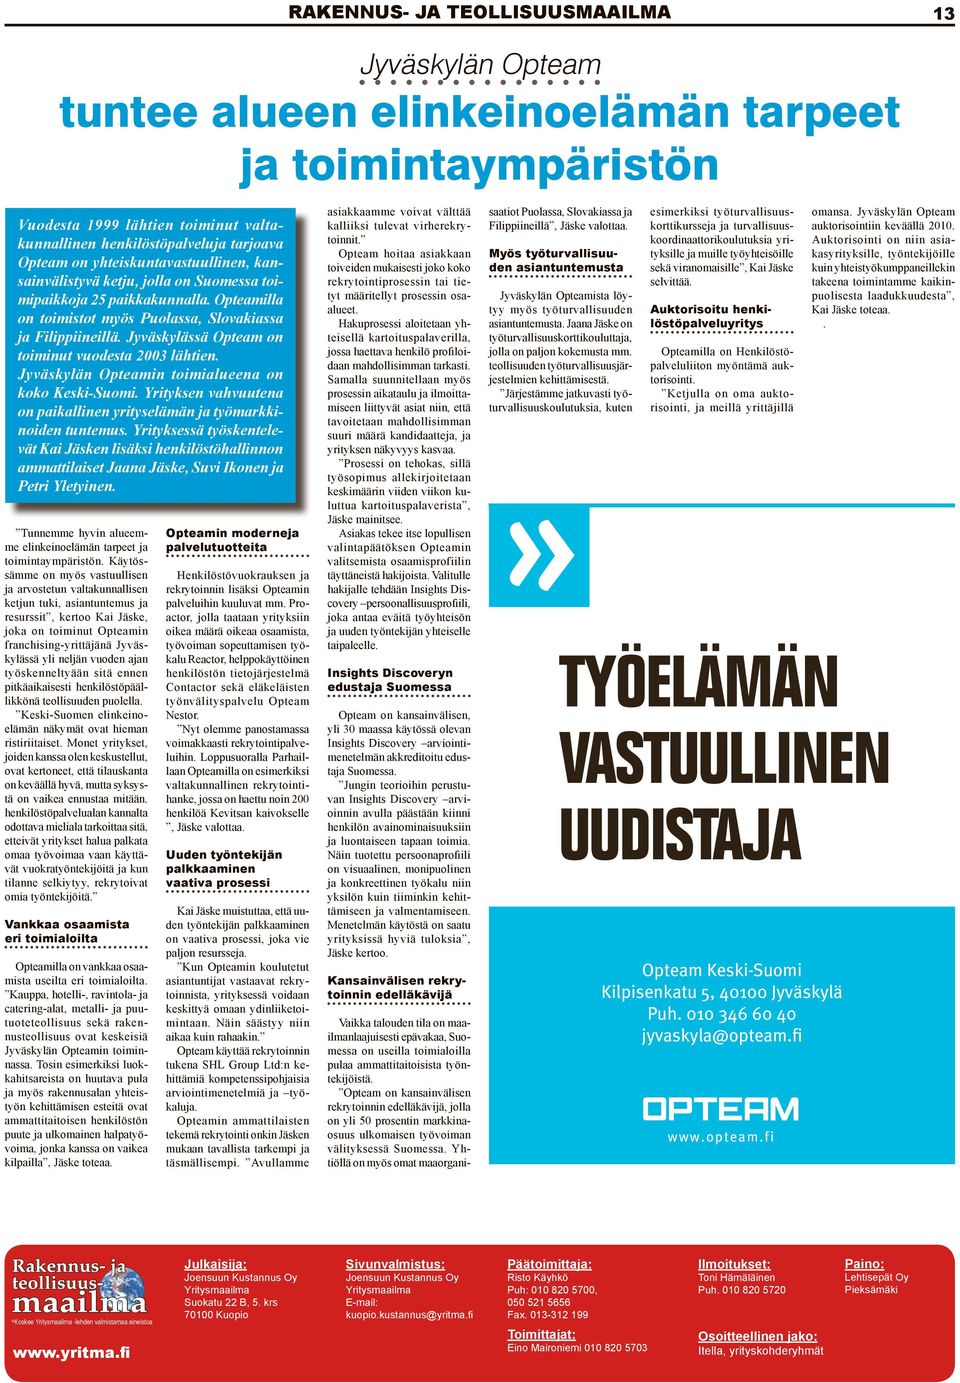 Jyväskylässä Opteam on toiminut vuodesta 2003 lähtien. Jyväskylän Opteamin toimialueena on koko Keski-Suomi. Yrityksen vahvuutena on paikallinen yrityselämän ja työmarkkinoiden tuntemus.